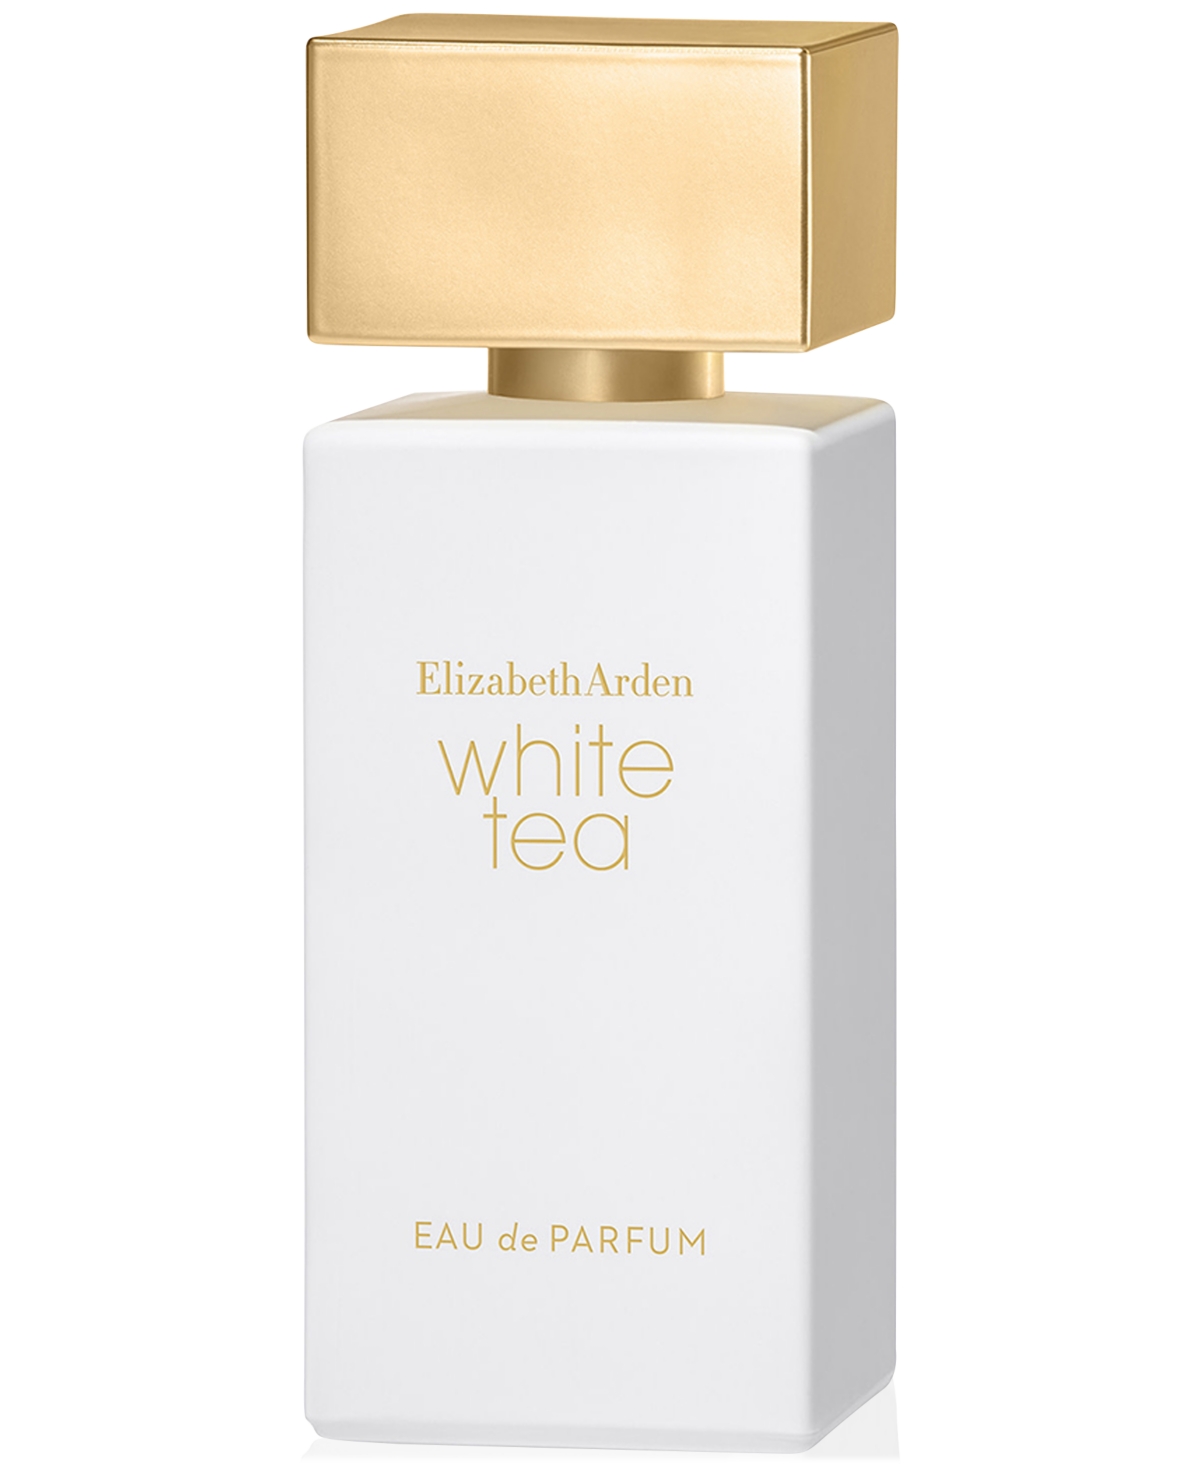 White Tea Eau de Parfum, 1.7 oz.